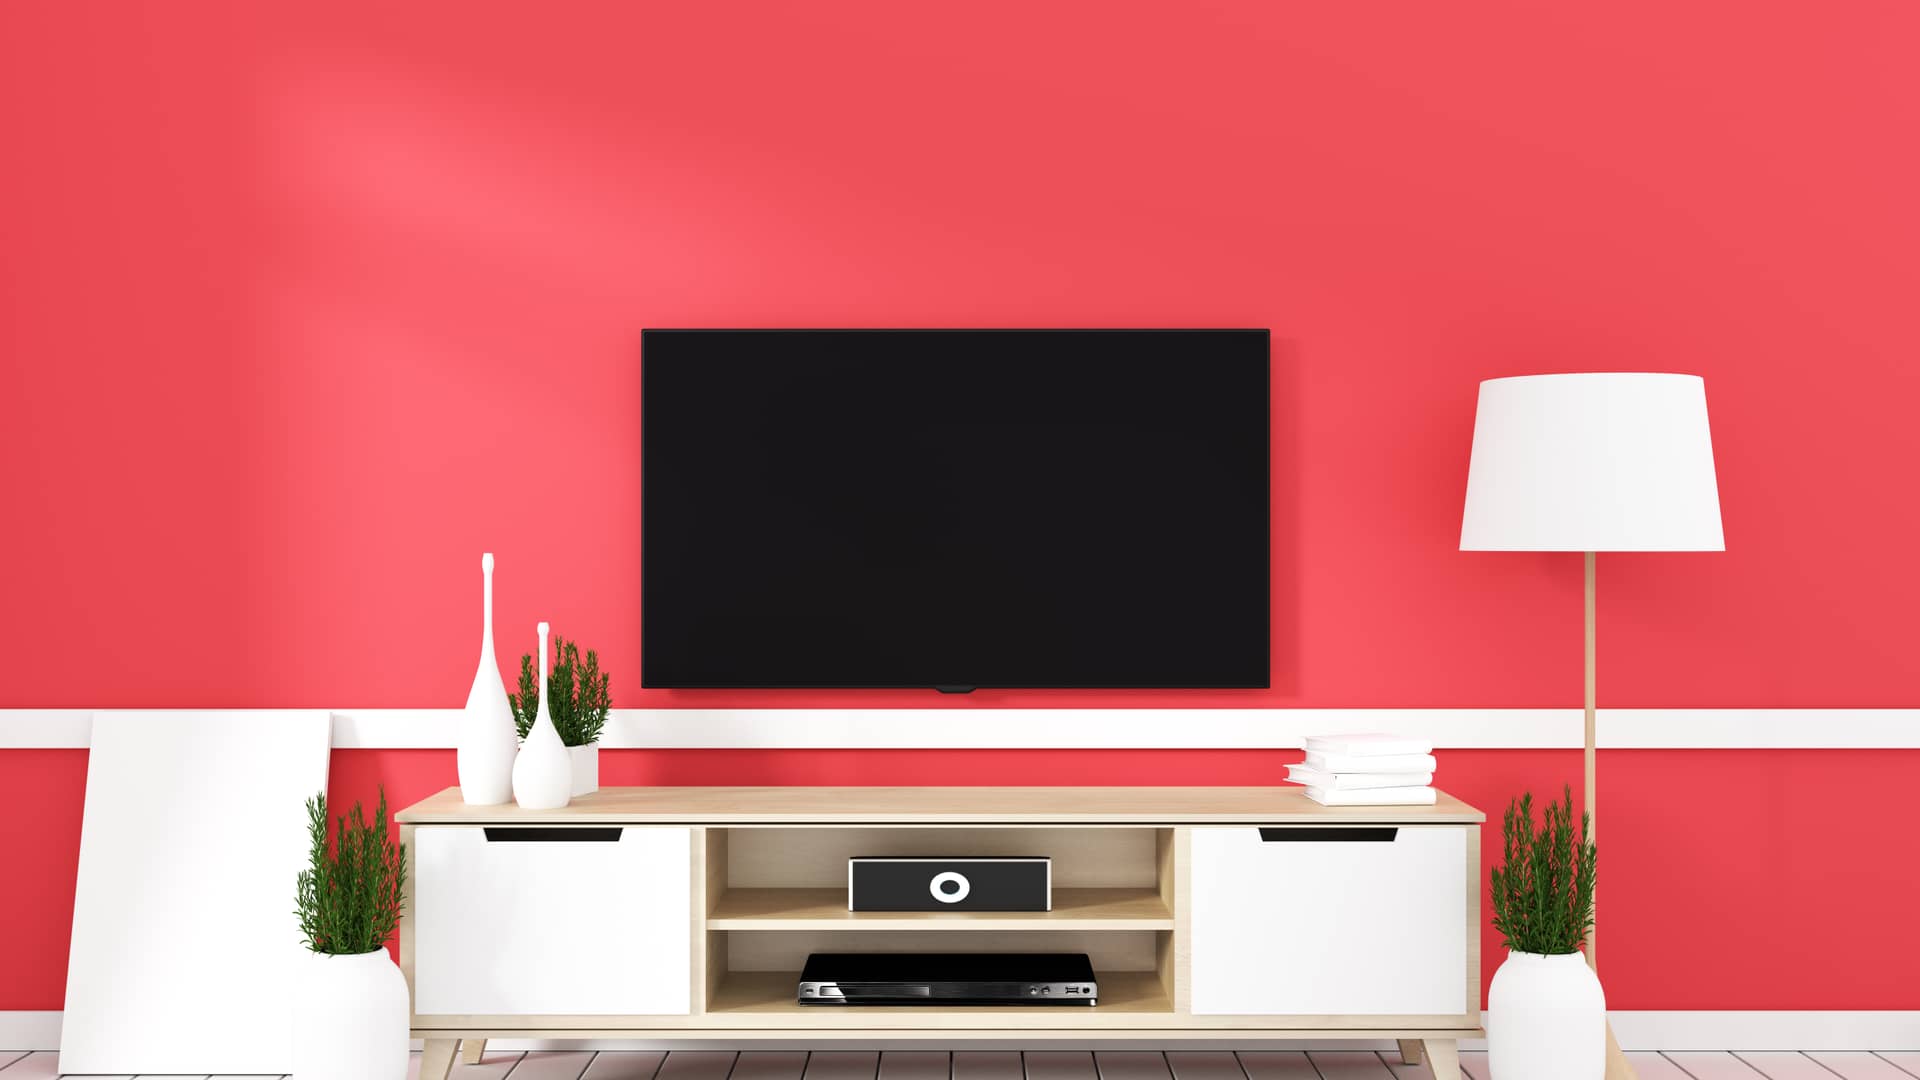 Salón rojo con mueble tv y smartv sirven para ilustrar las ofertas de vodafone en televisores